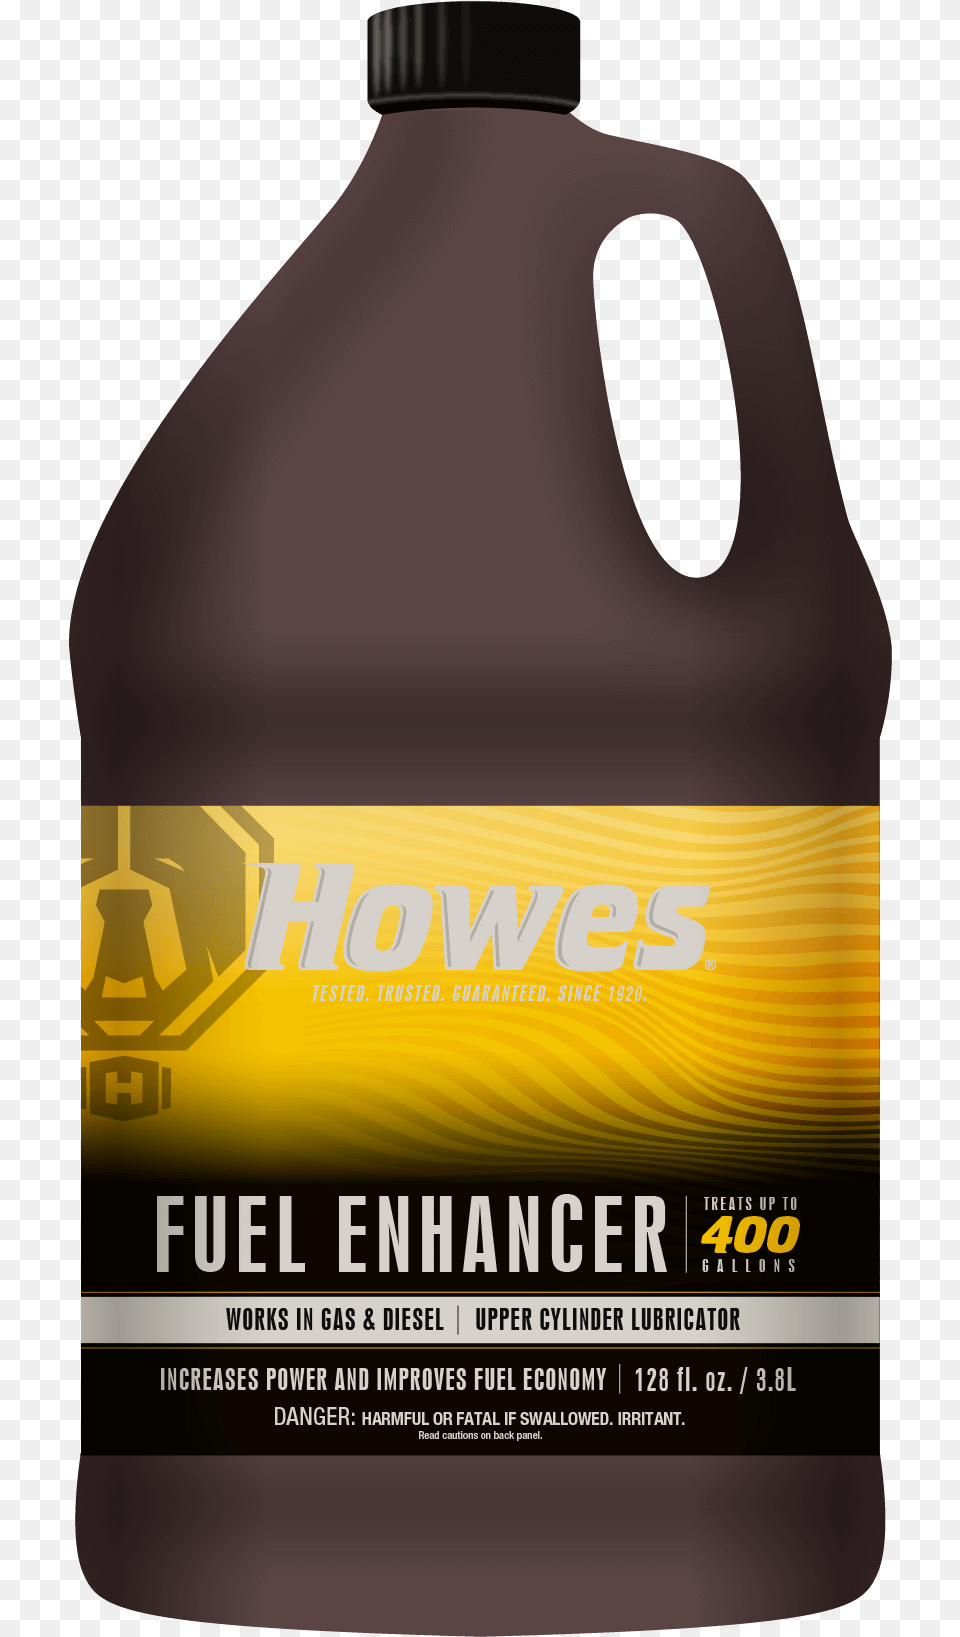 Fuel Enhancer Bottle, Food, Seasoning, Syrup Free Transparent Png